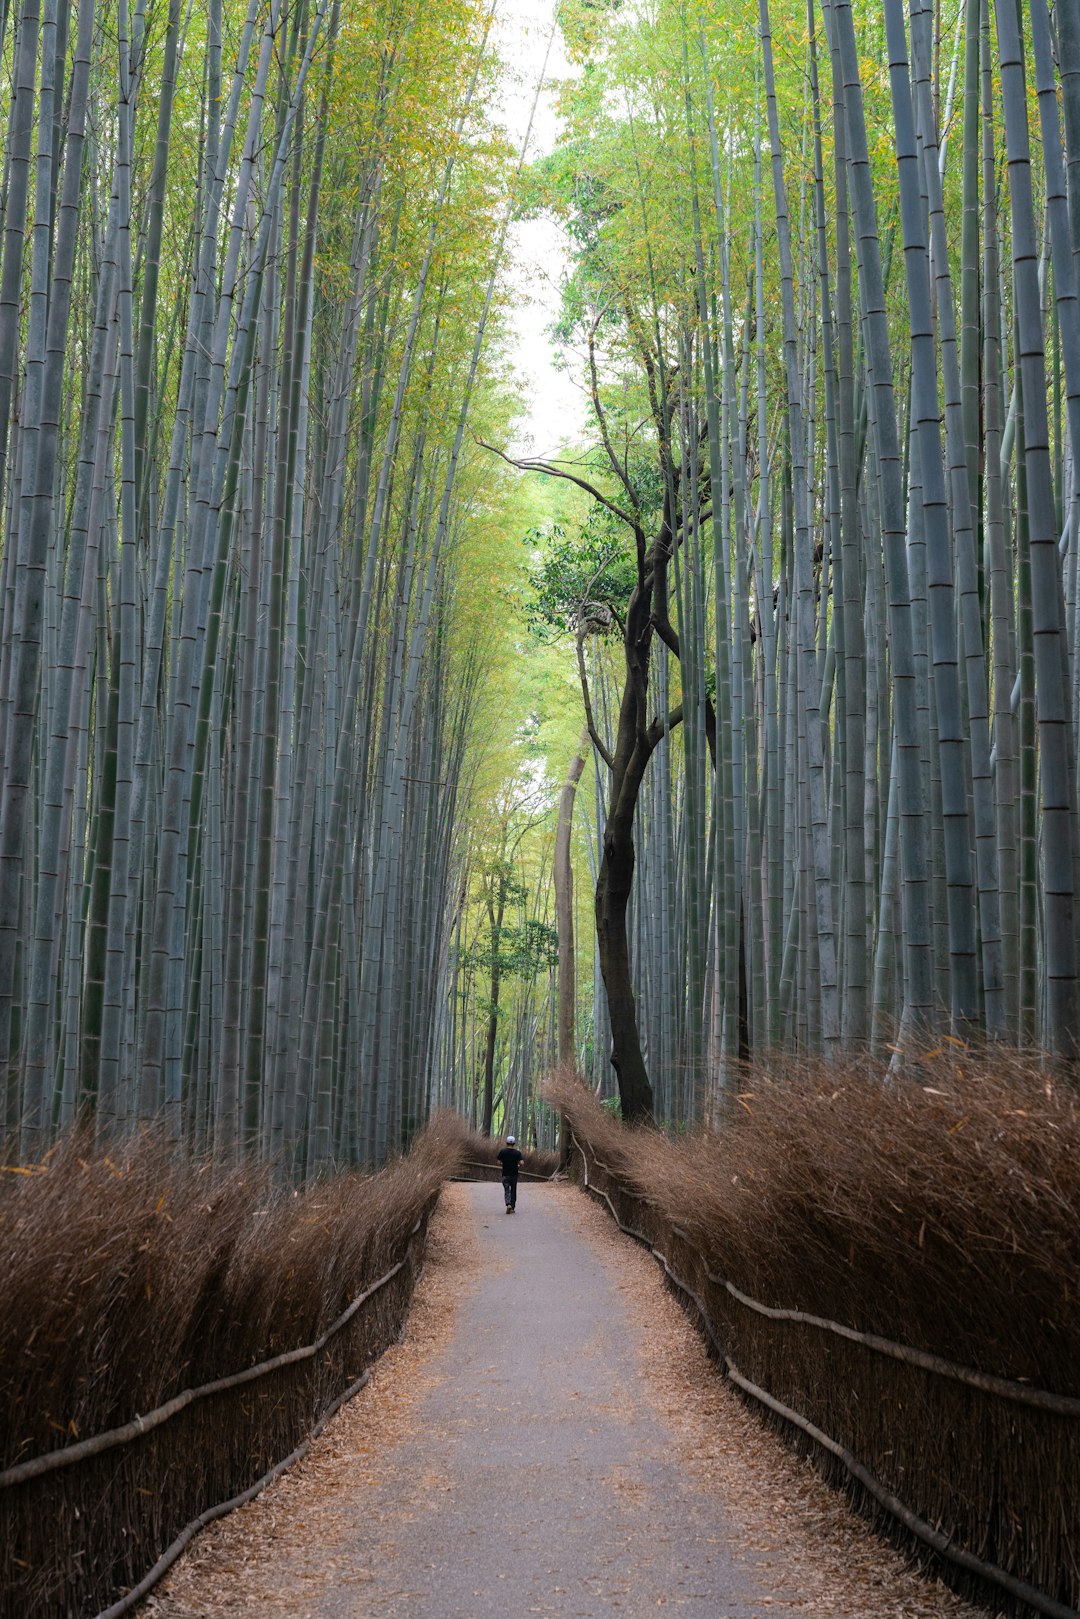 Forest photo spot Arashiyama Bamboo Forest Nara